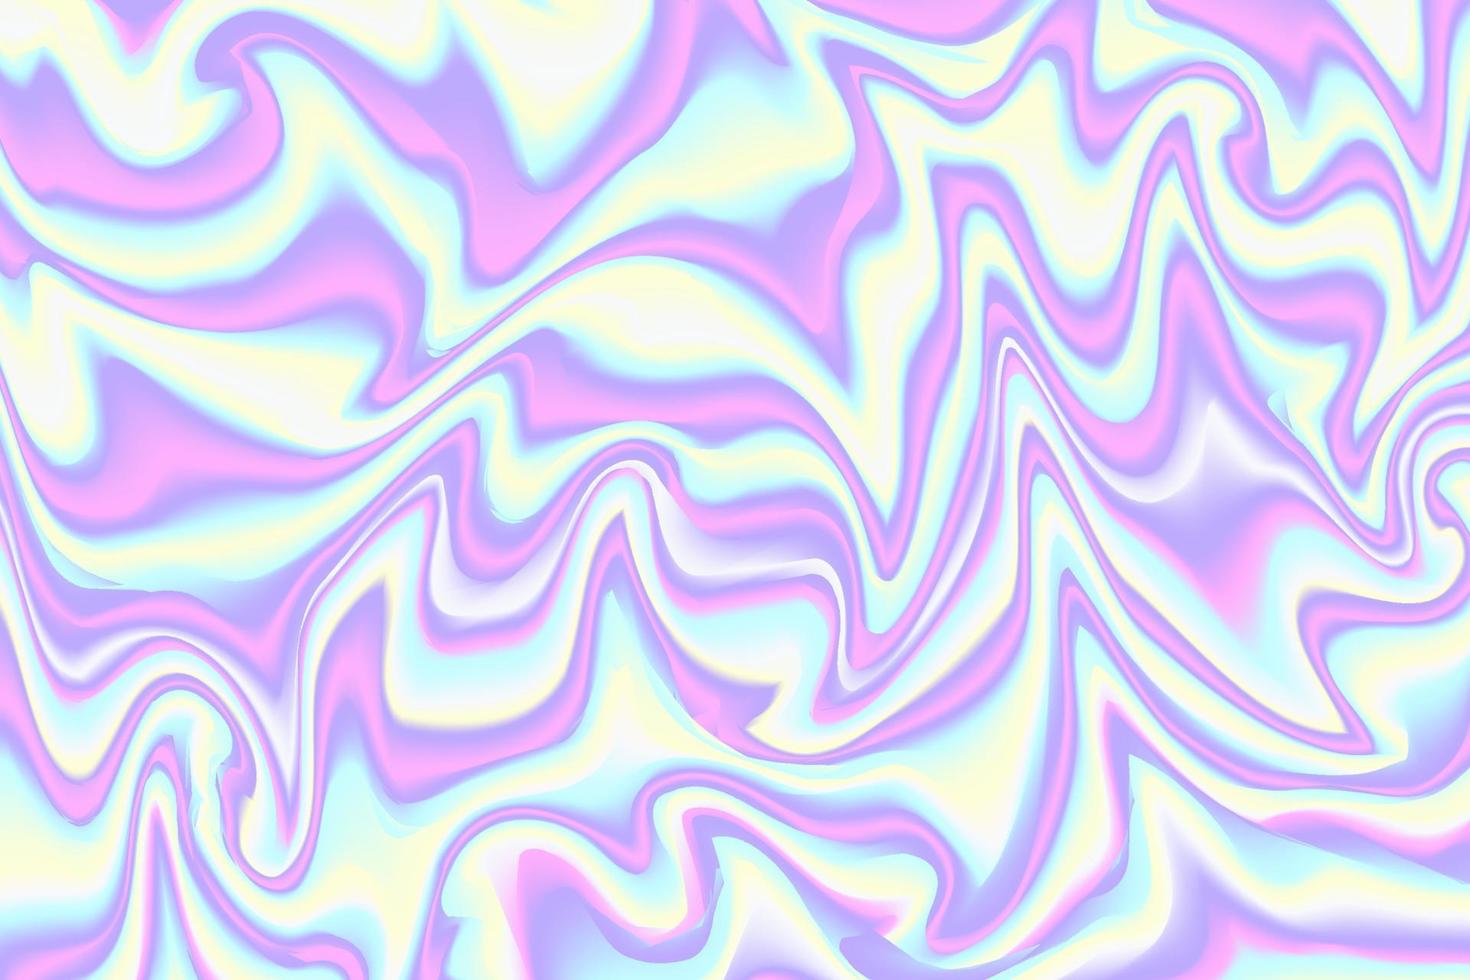 holografischer hintergrund mit neongradiententextur. schillerndes abstraktes Muster mit leuchtenden Farben. Vektor trendiges Regenbogendesign.